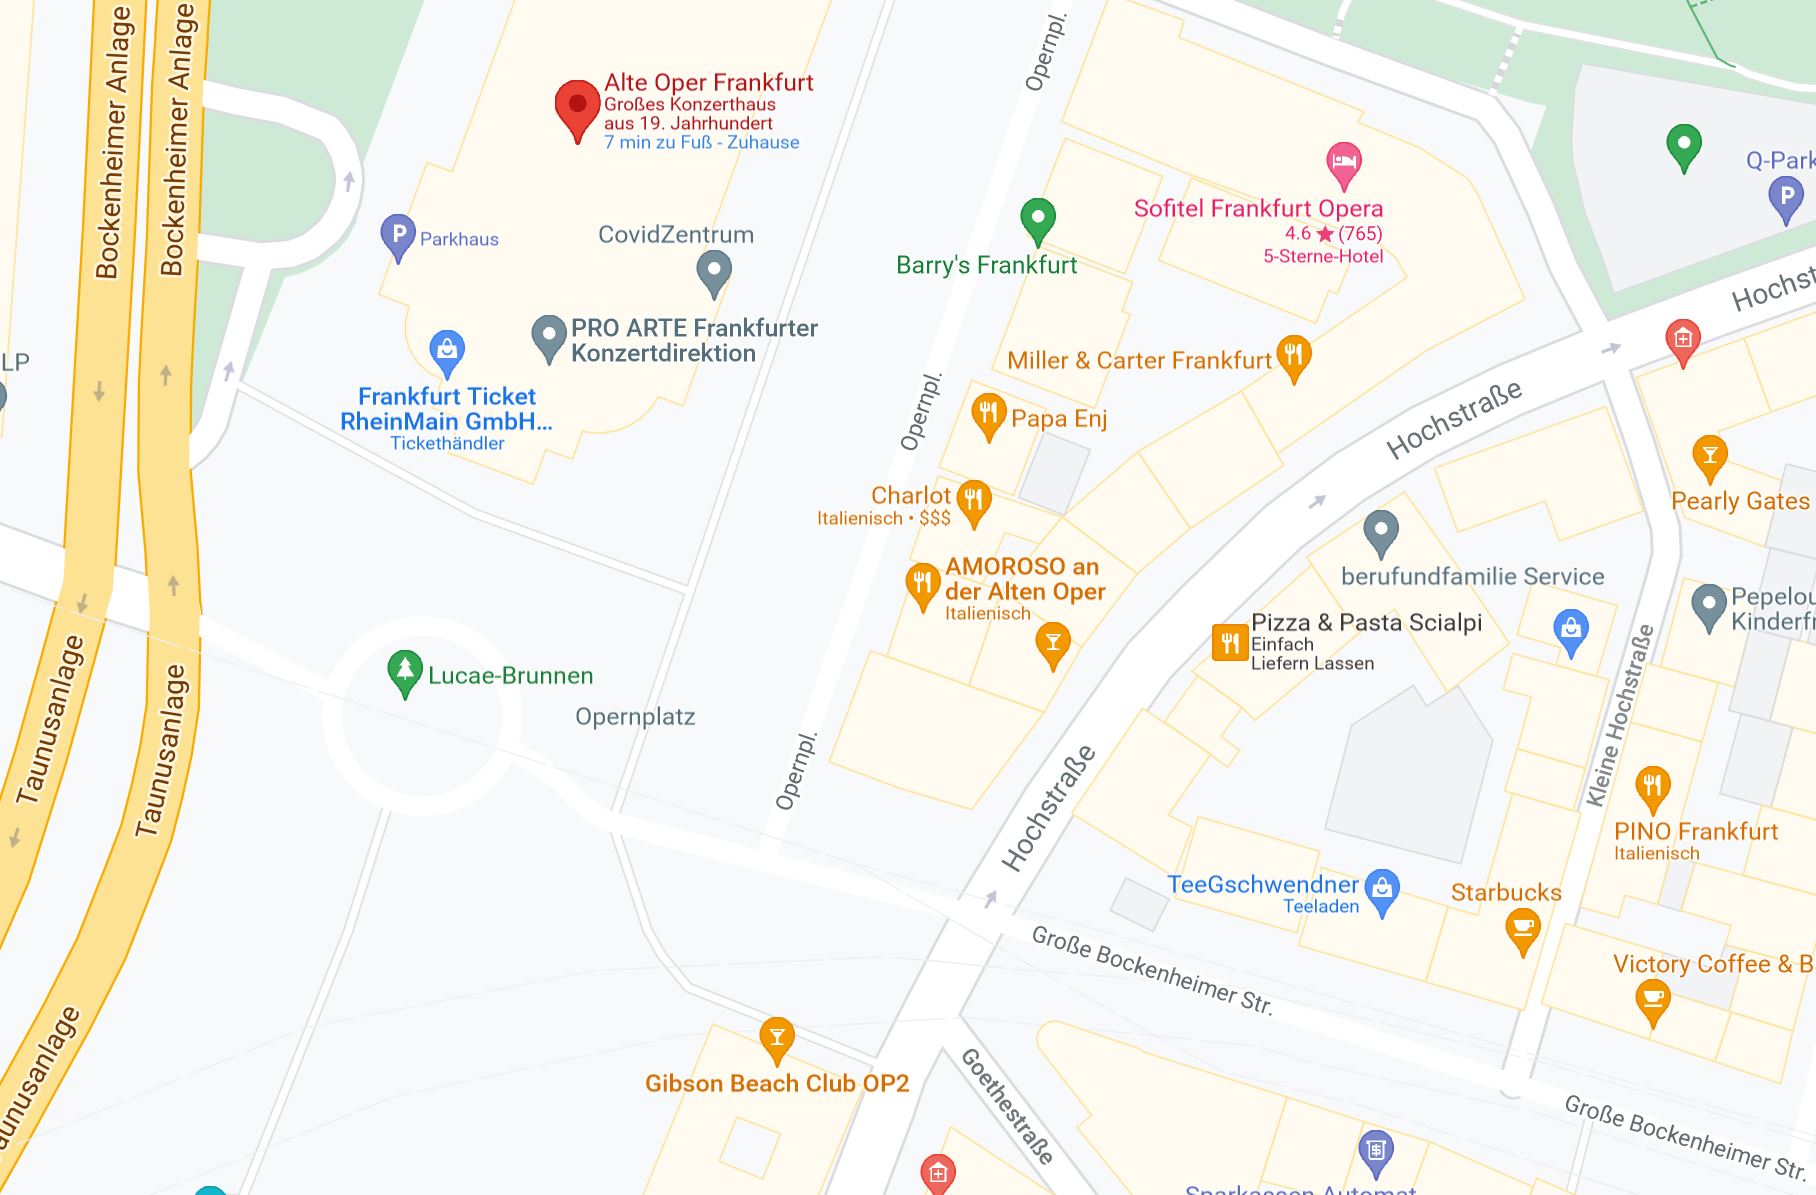 Ausschnitt Google Maps Opernplatz Frankufrt am Main